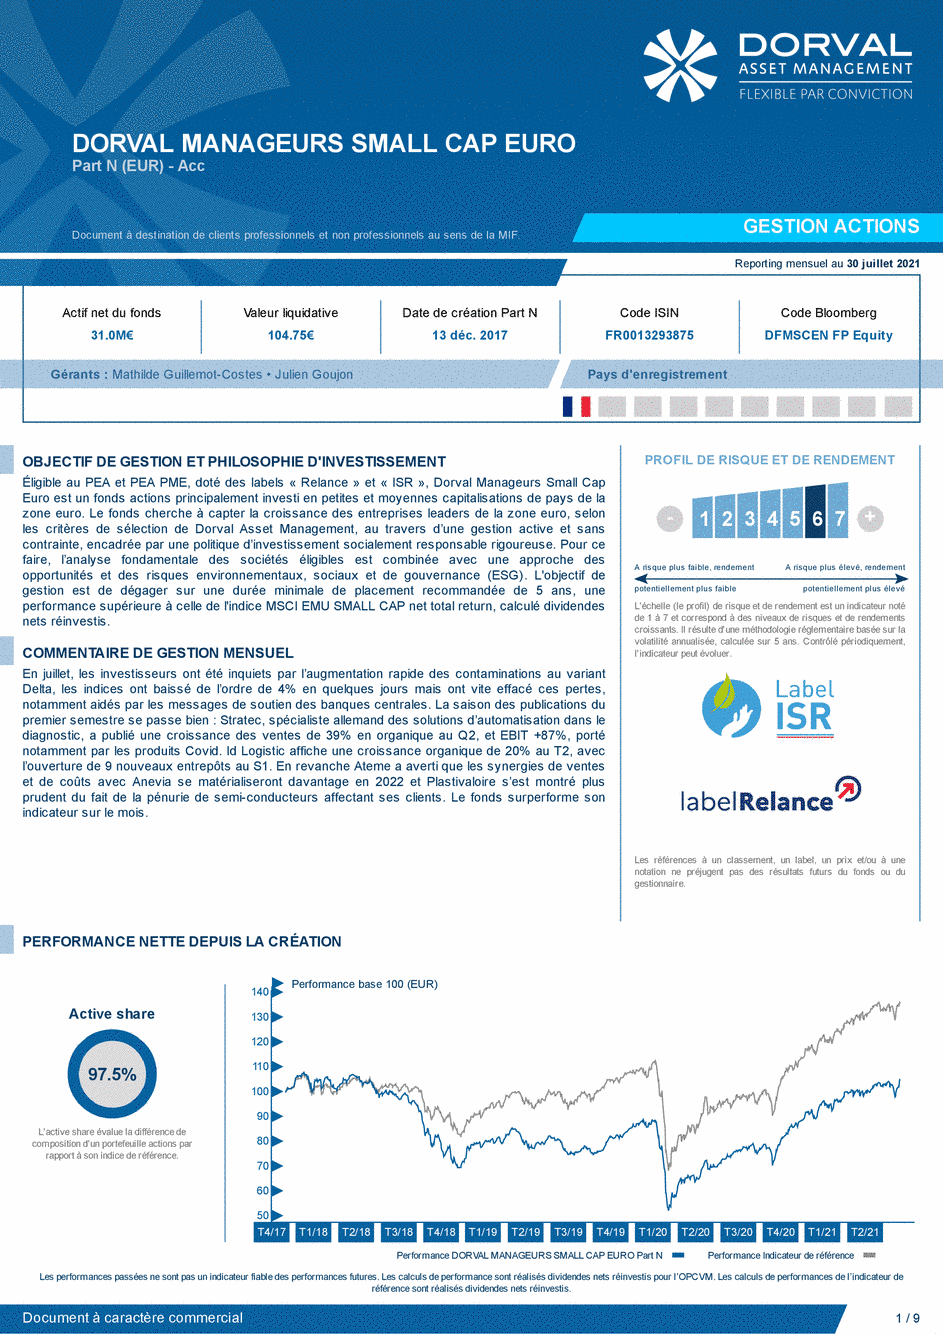 Reporting DORVAL MANAGEURS SMALL CAP EURO N - 30/07/2021 - Français